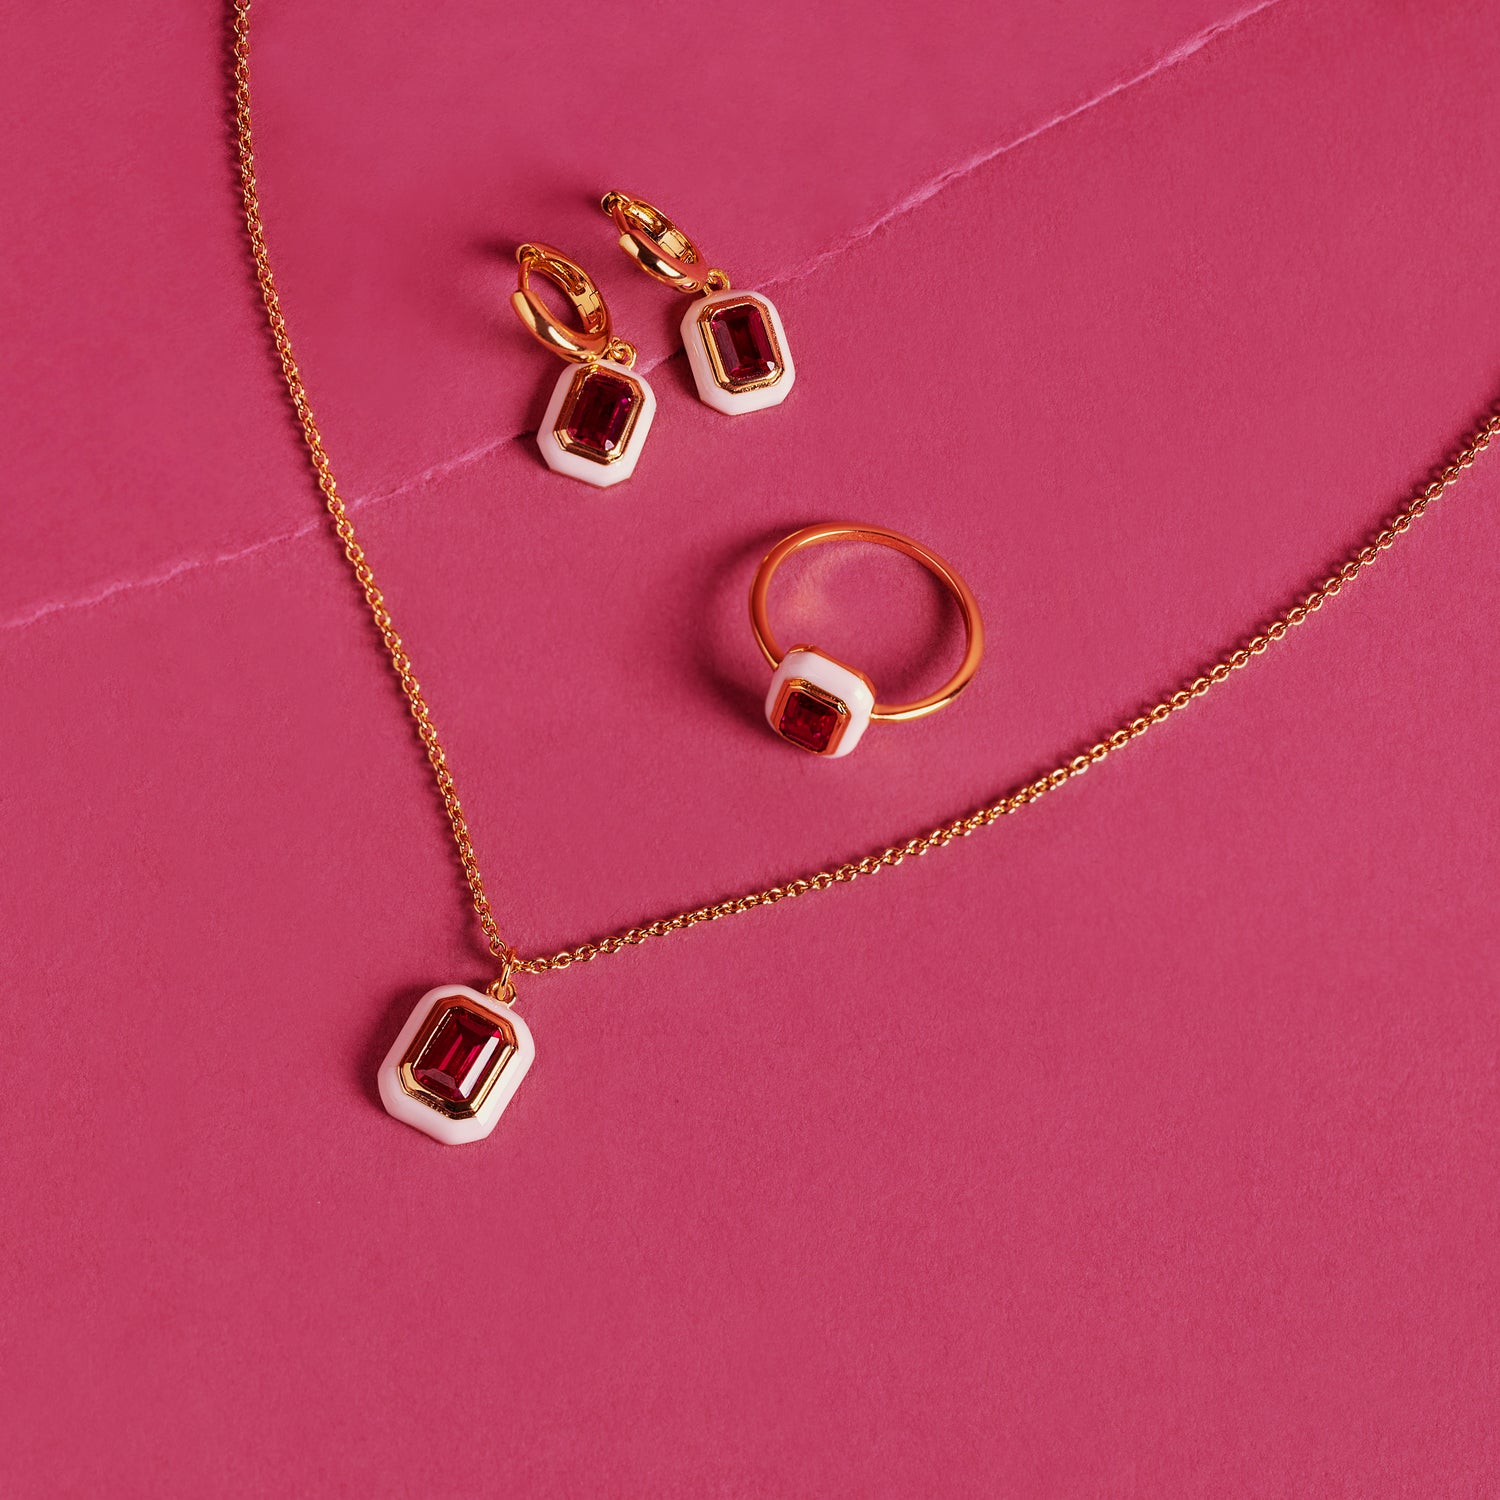 J&CO Jewellery Ruby Heart Hoop Earrings Gold